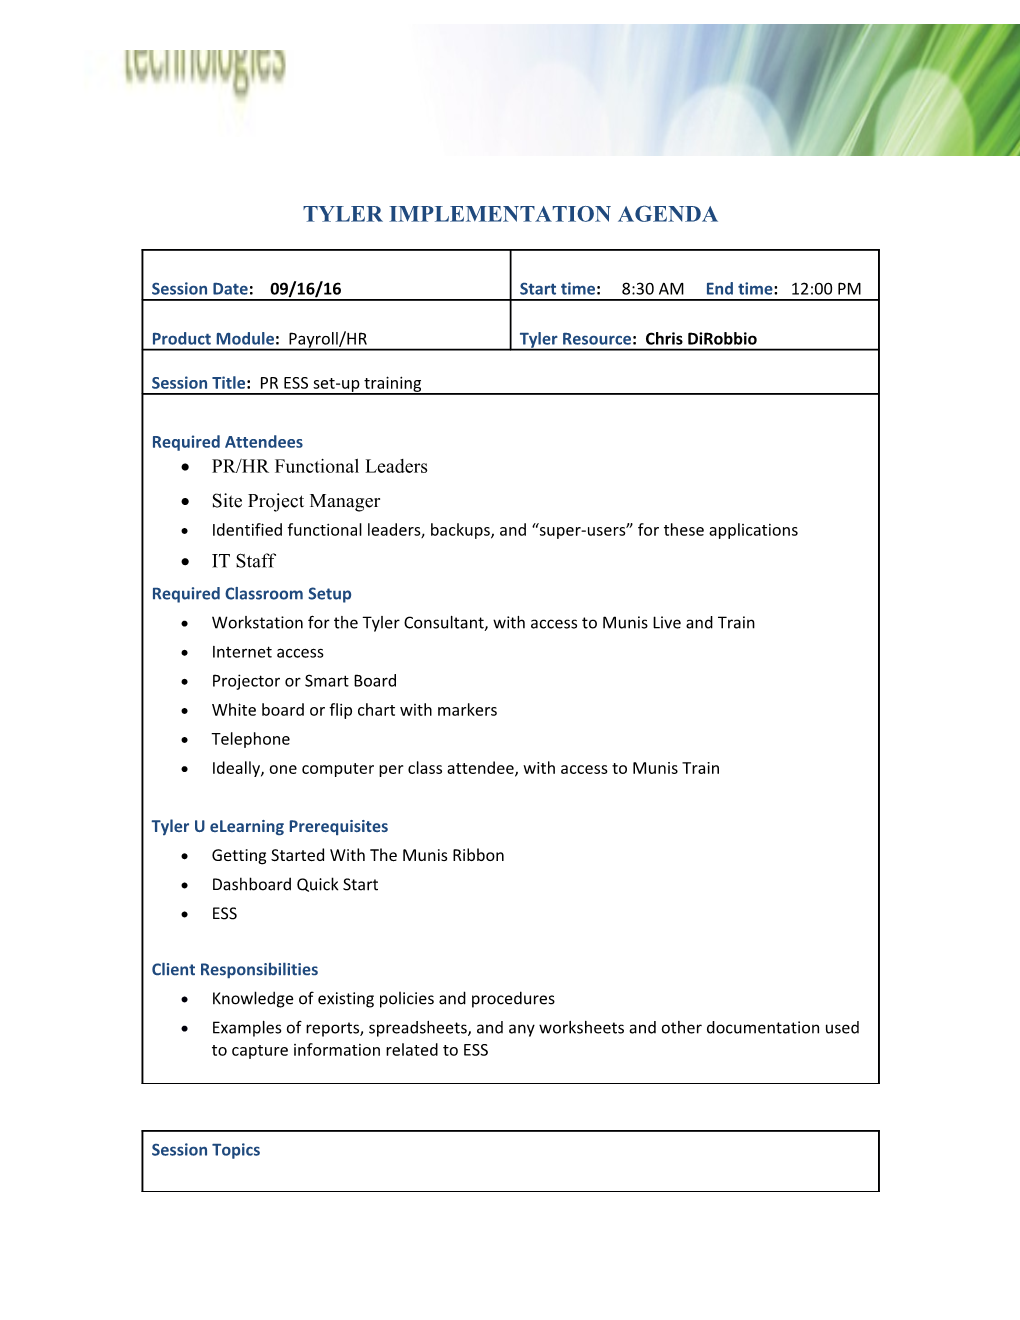 Tyler Implementation Agenda